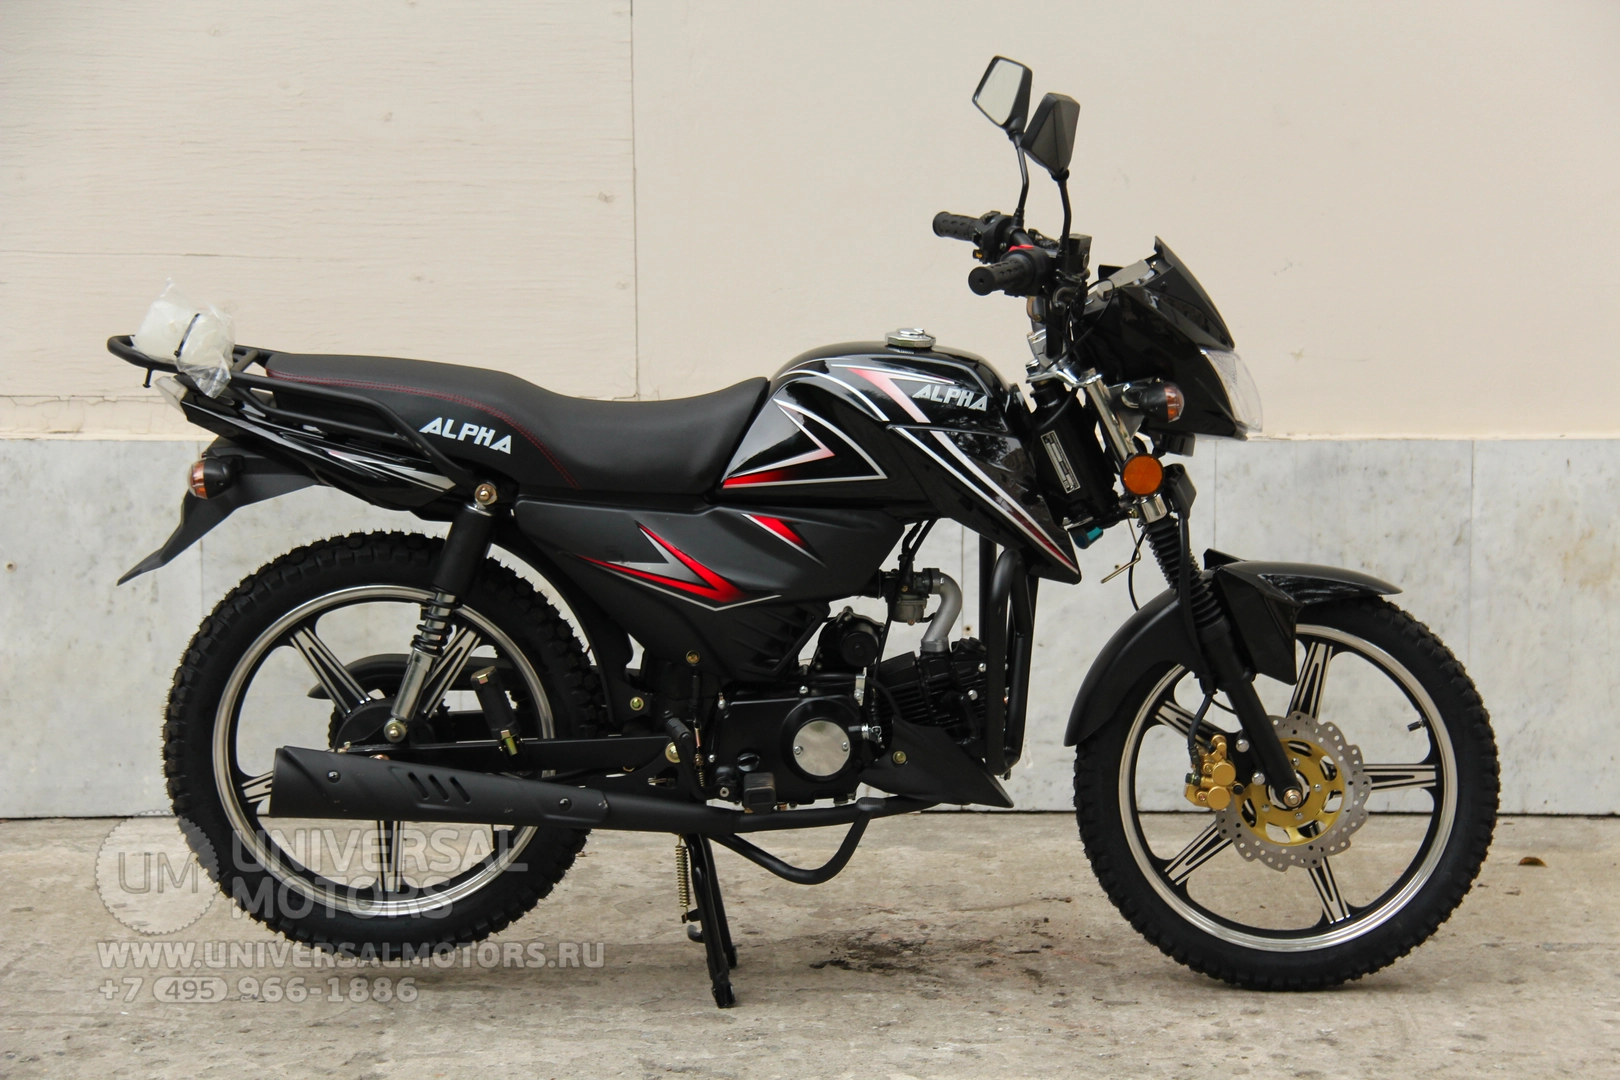 Мотоцикл Universal Alpha CX 125 (50), 21291980072762614094